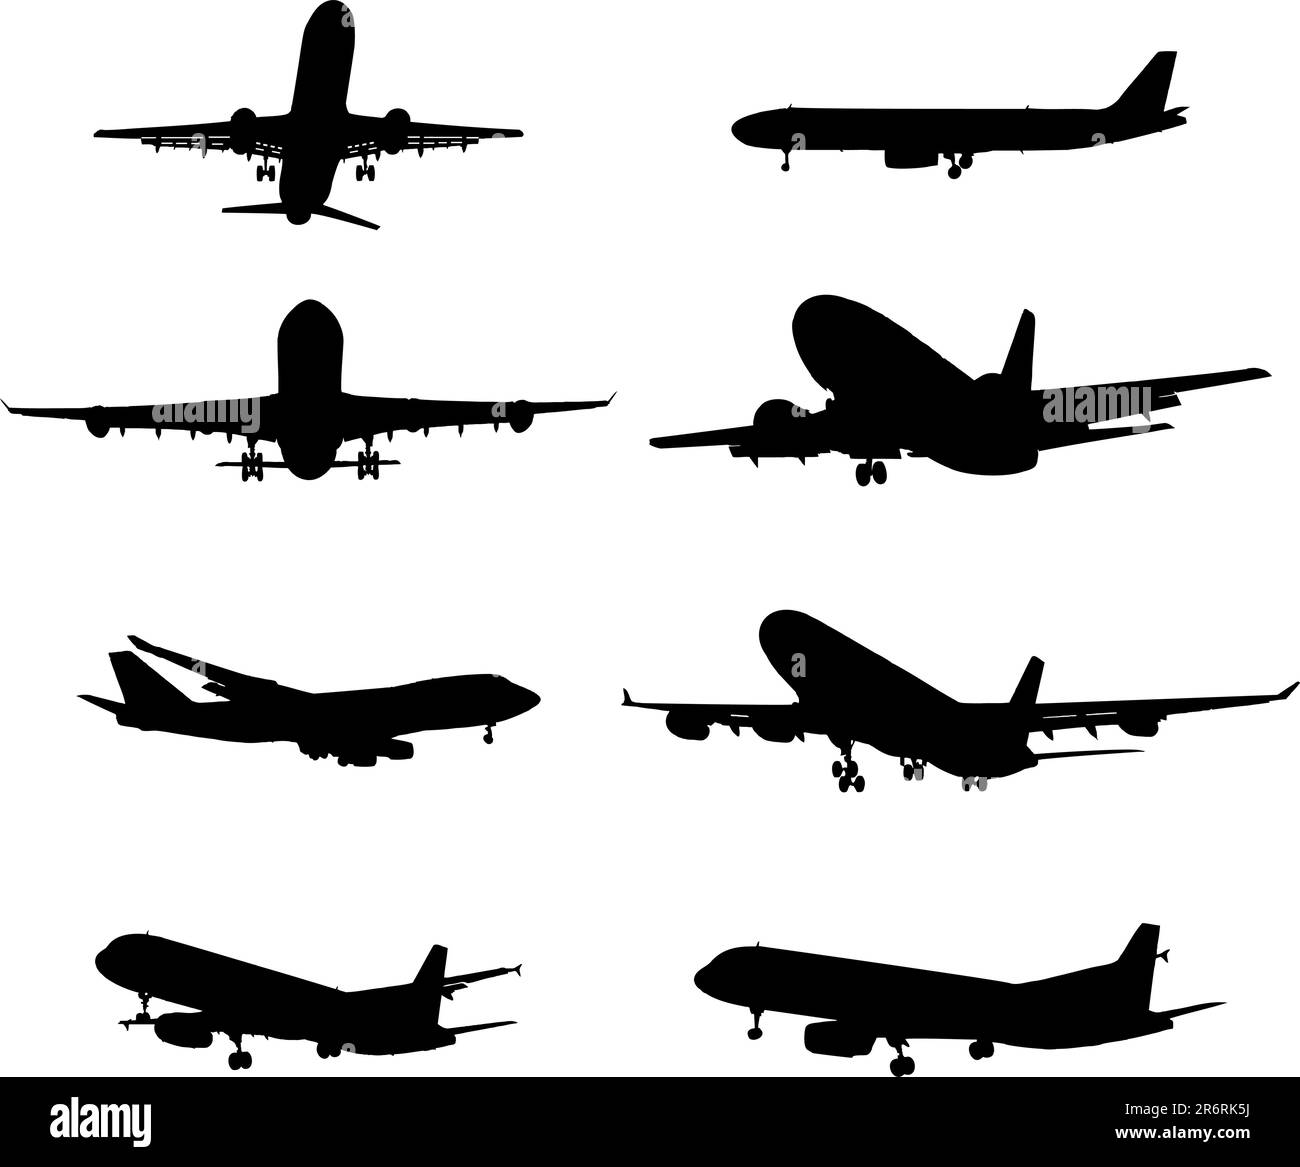 Imposta l'aereo. Un vettore. Immagini simili si trovano nella mia galleria. Illustrazione Vettoriale